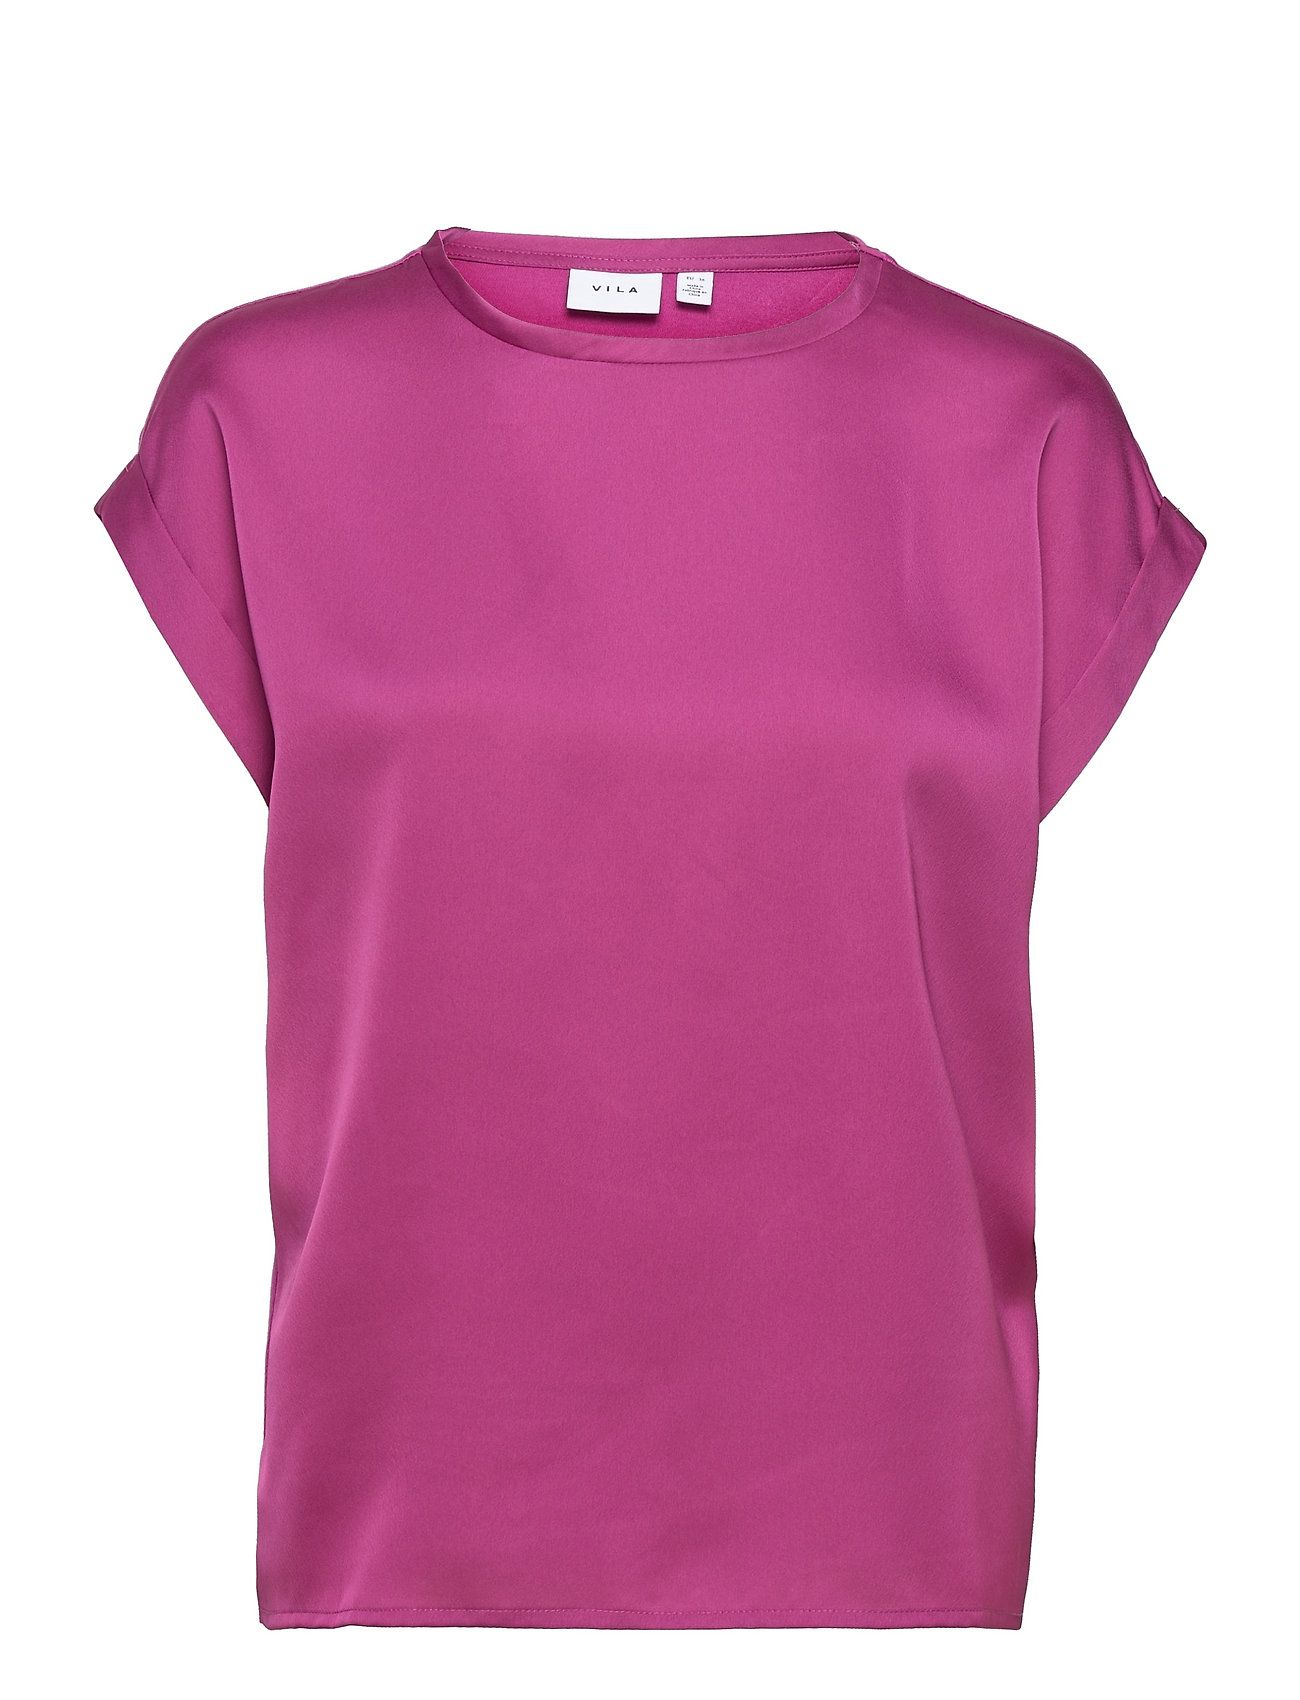 Viellette S/S Satin Top/Su - Fav T-shirts & Tops Short-sleeved Rosa Vila